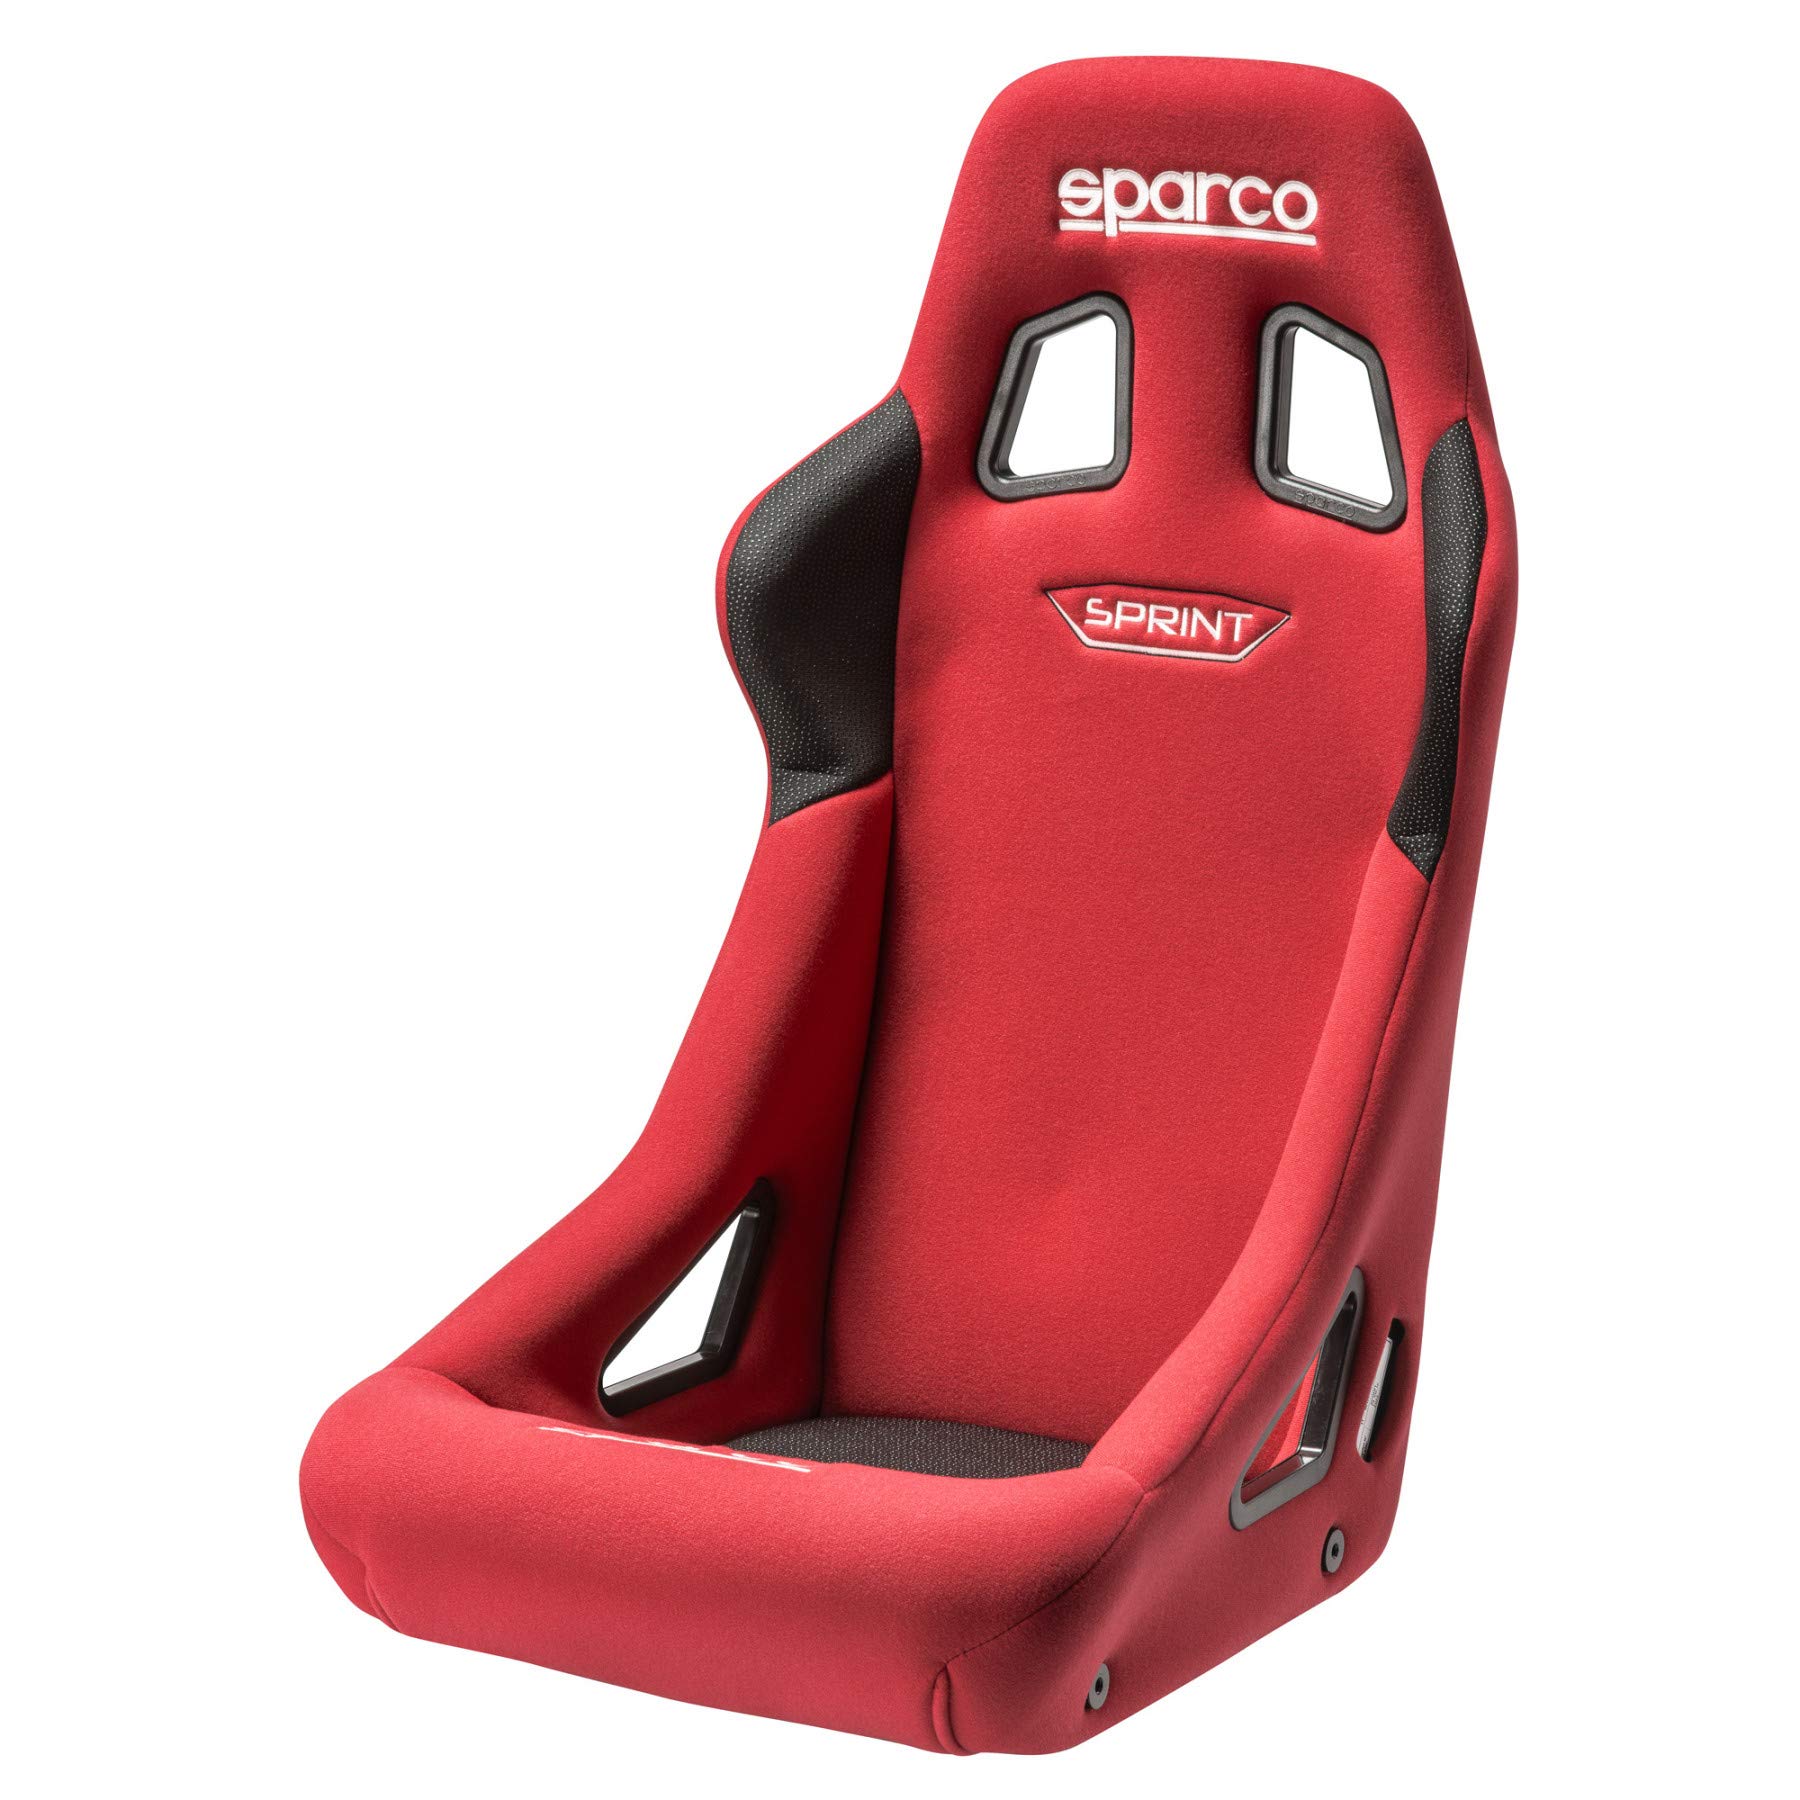 Sparco Red Seat Sprint 2019 von Sparco